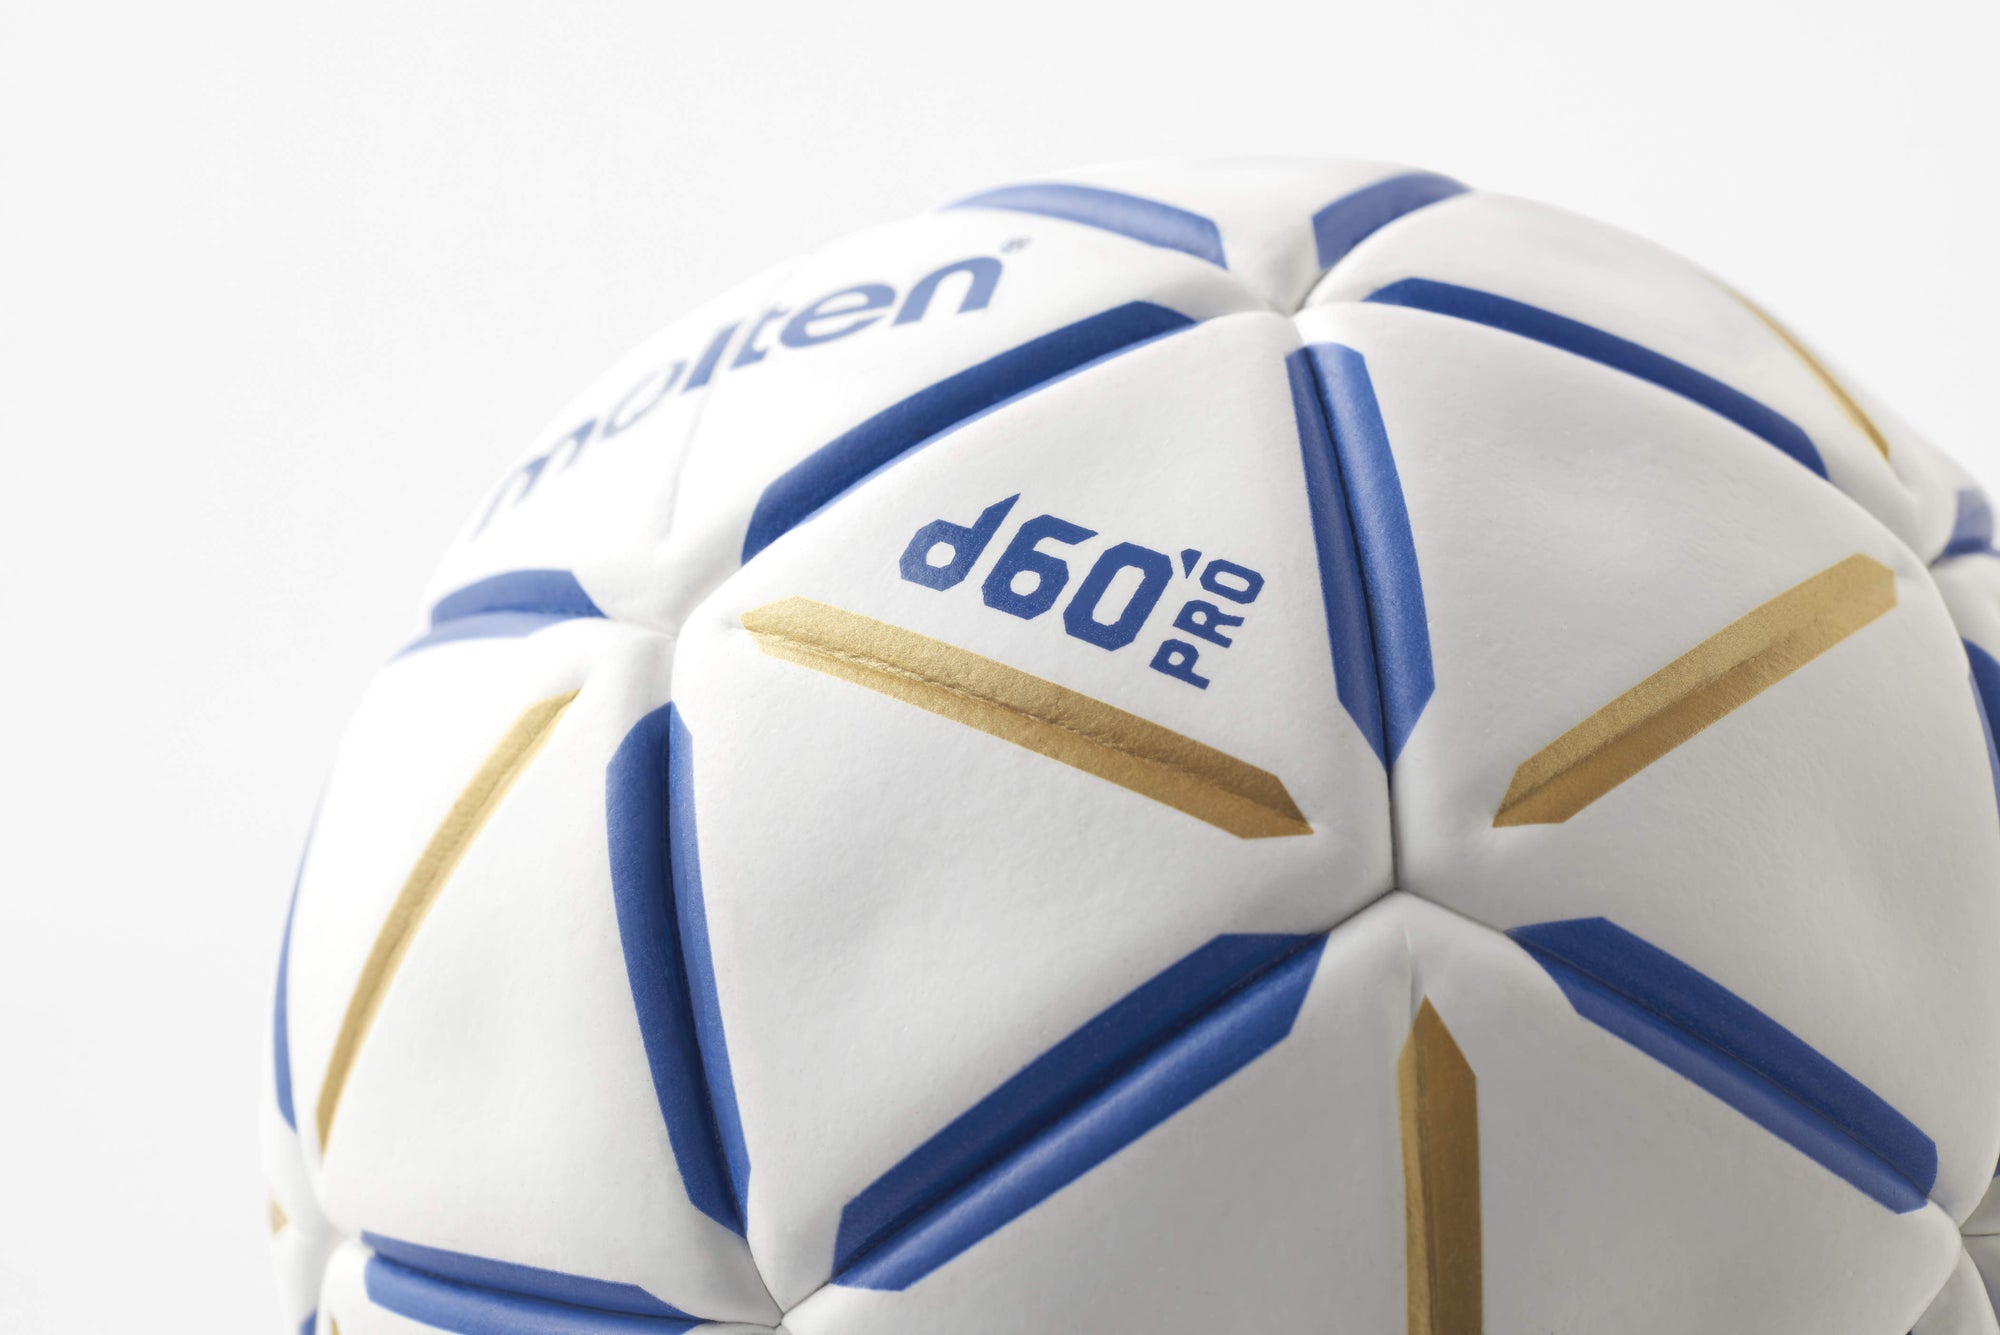 d60 Pro Handball